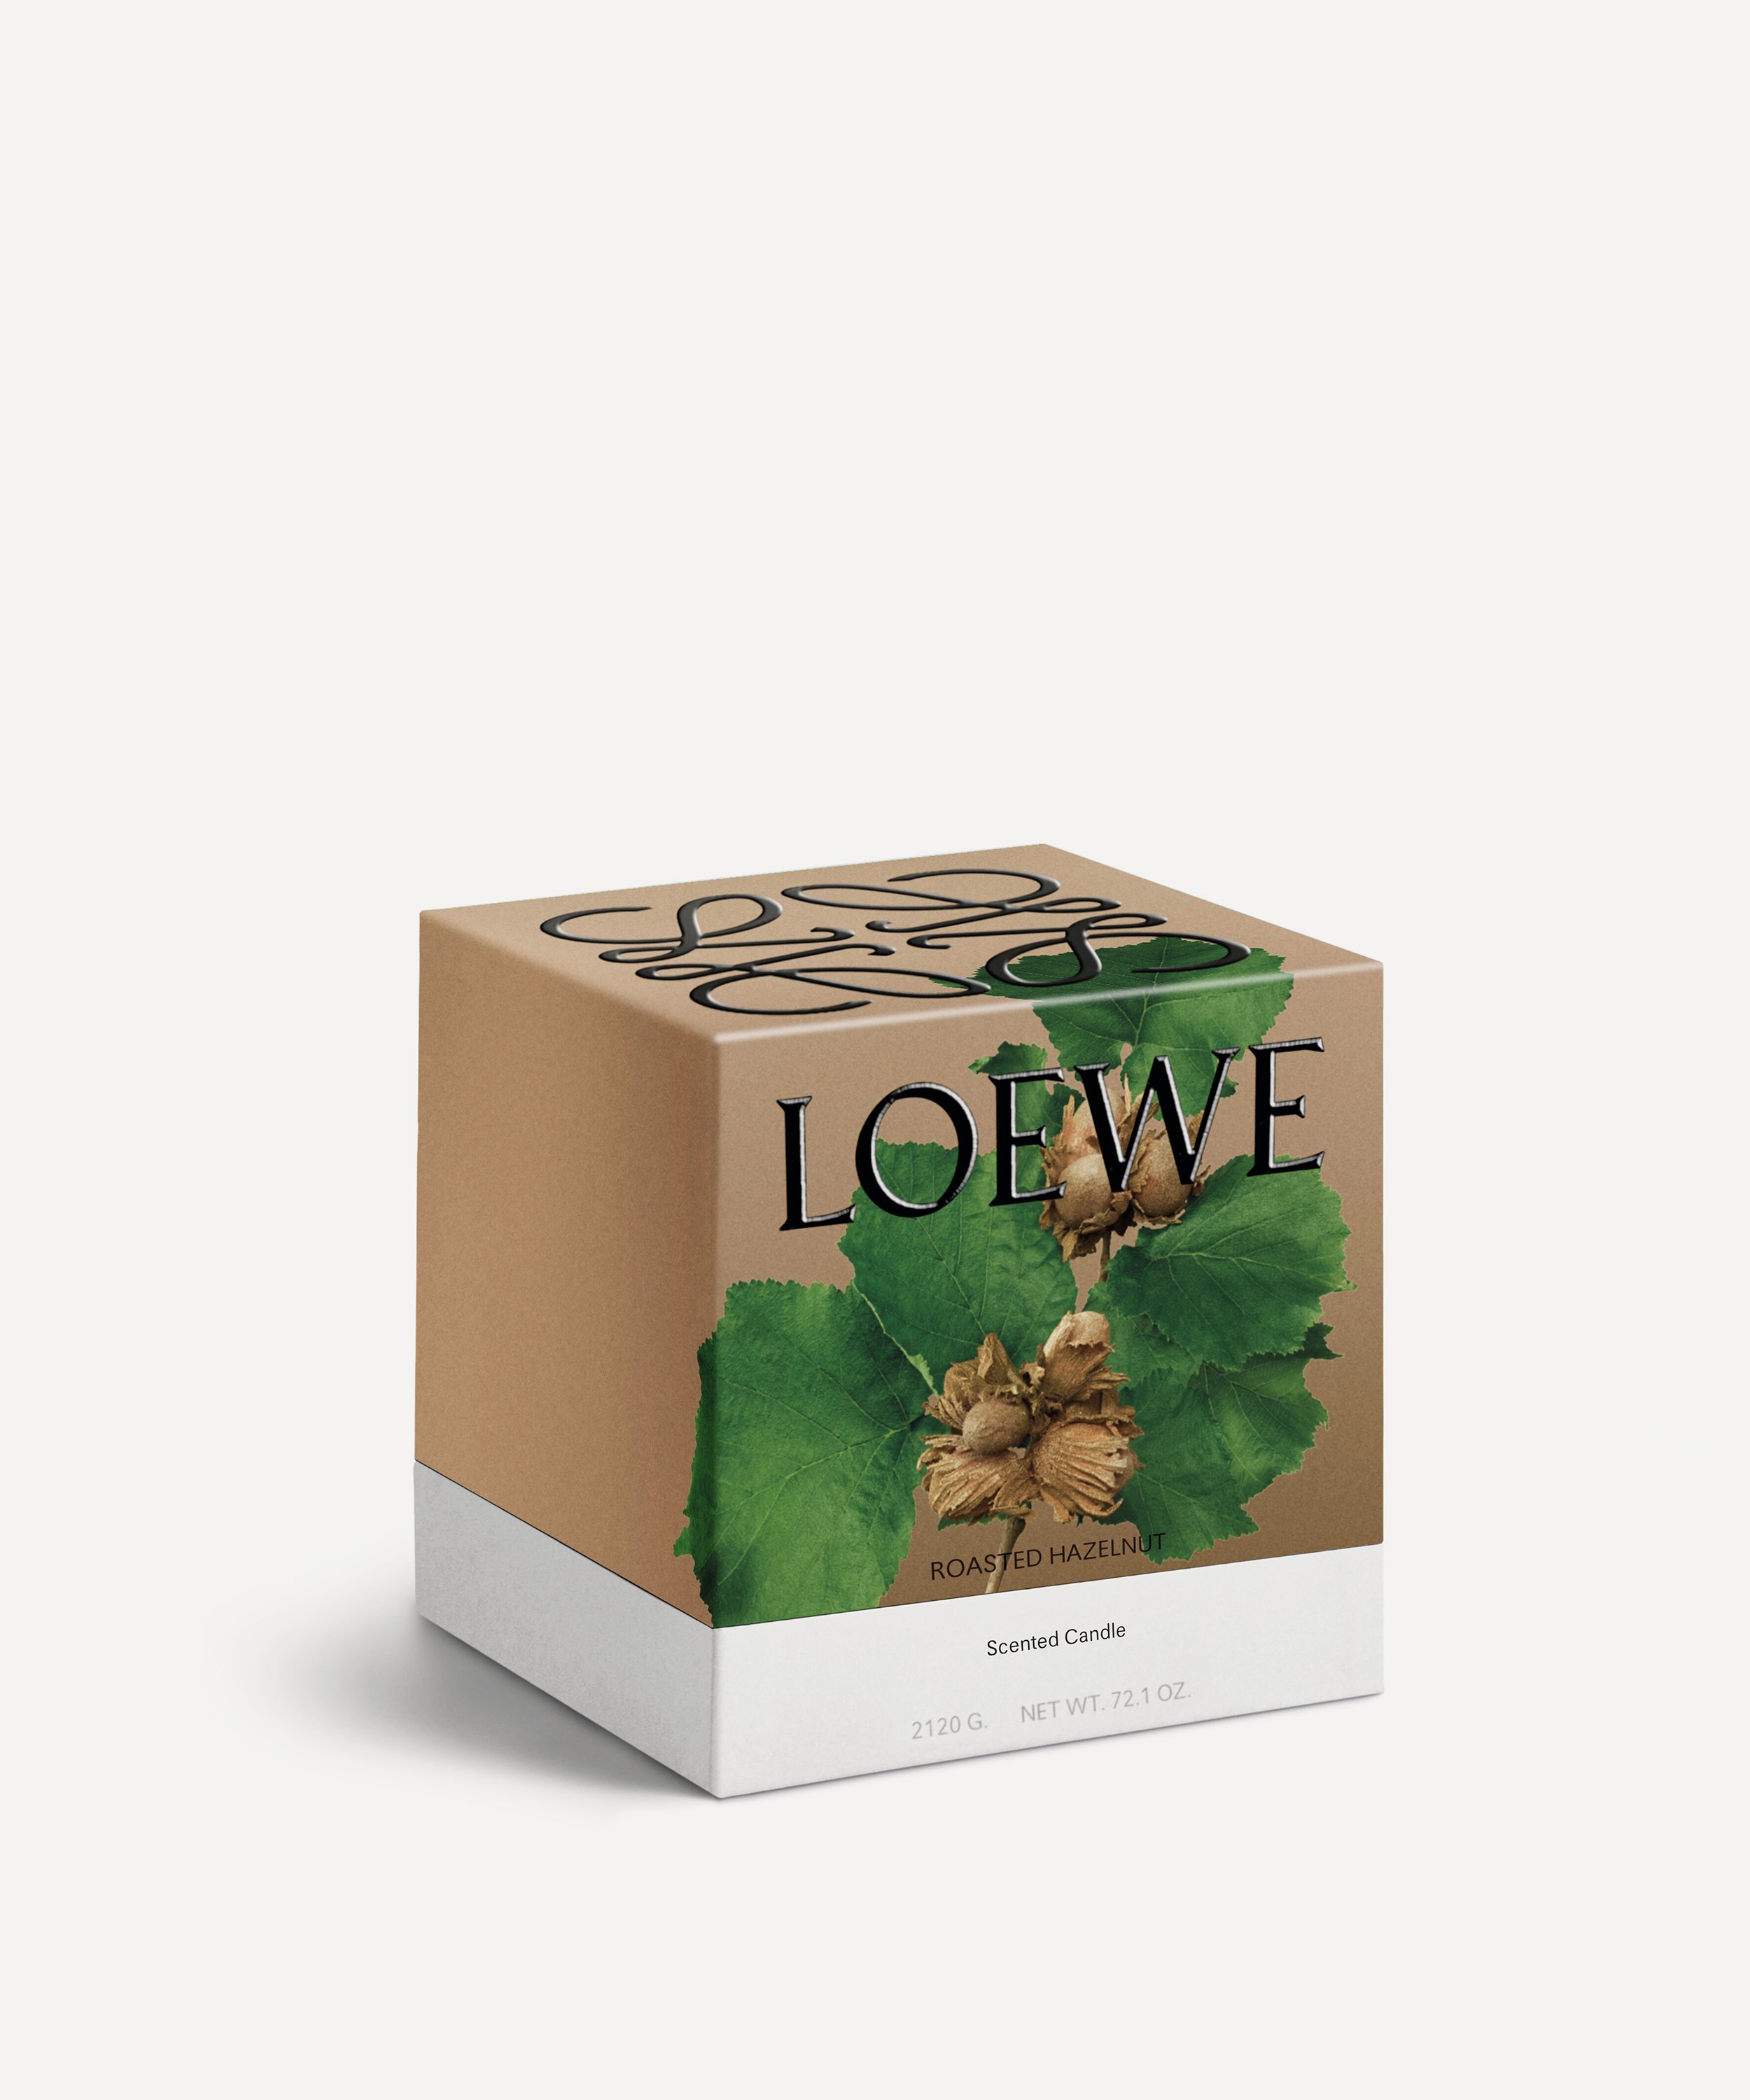 Loewe - Large Roasted Hazelnut Candle 2120g image number 2